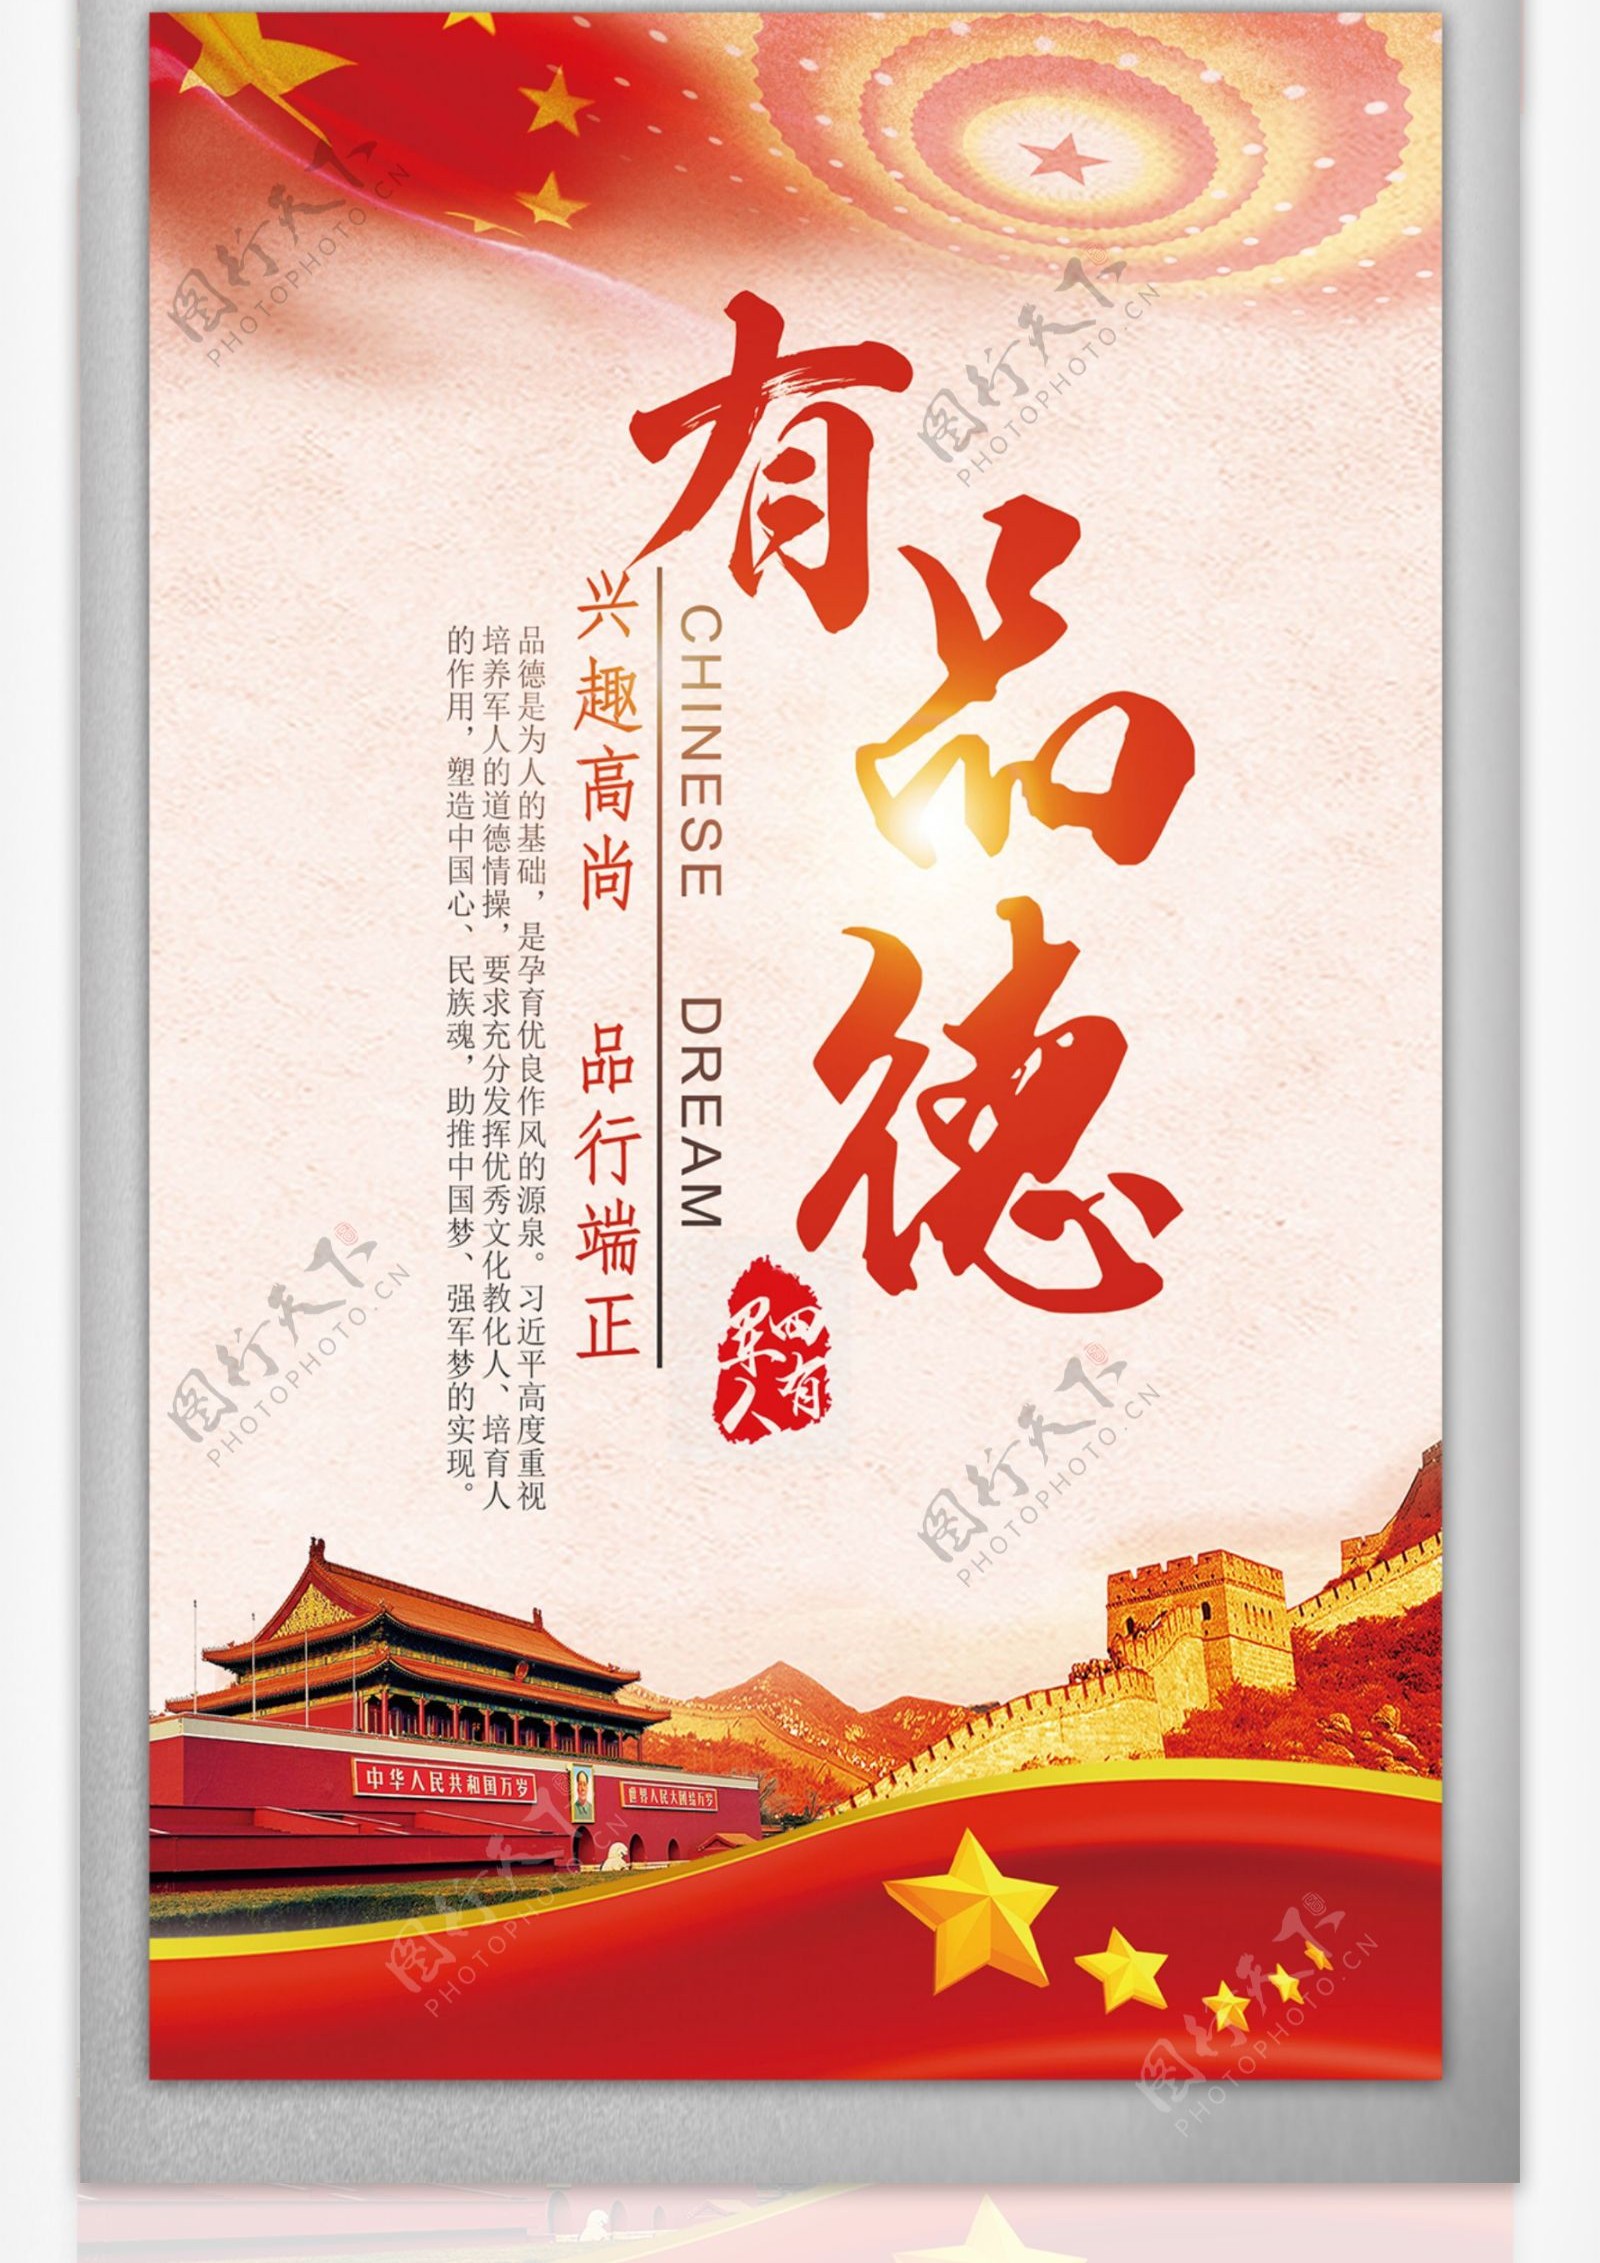 创意红色中国风四有军人挂画宣传展板设计